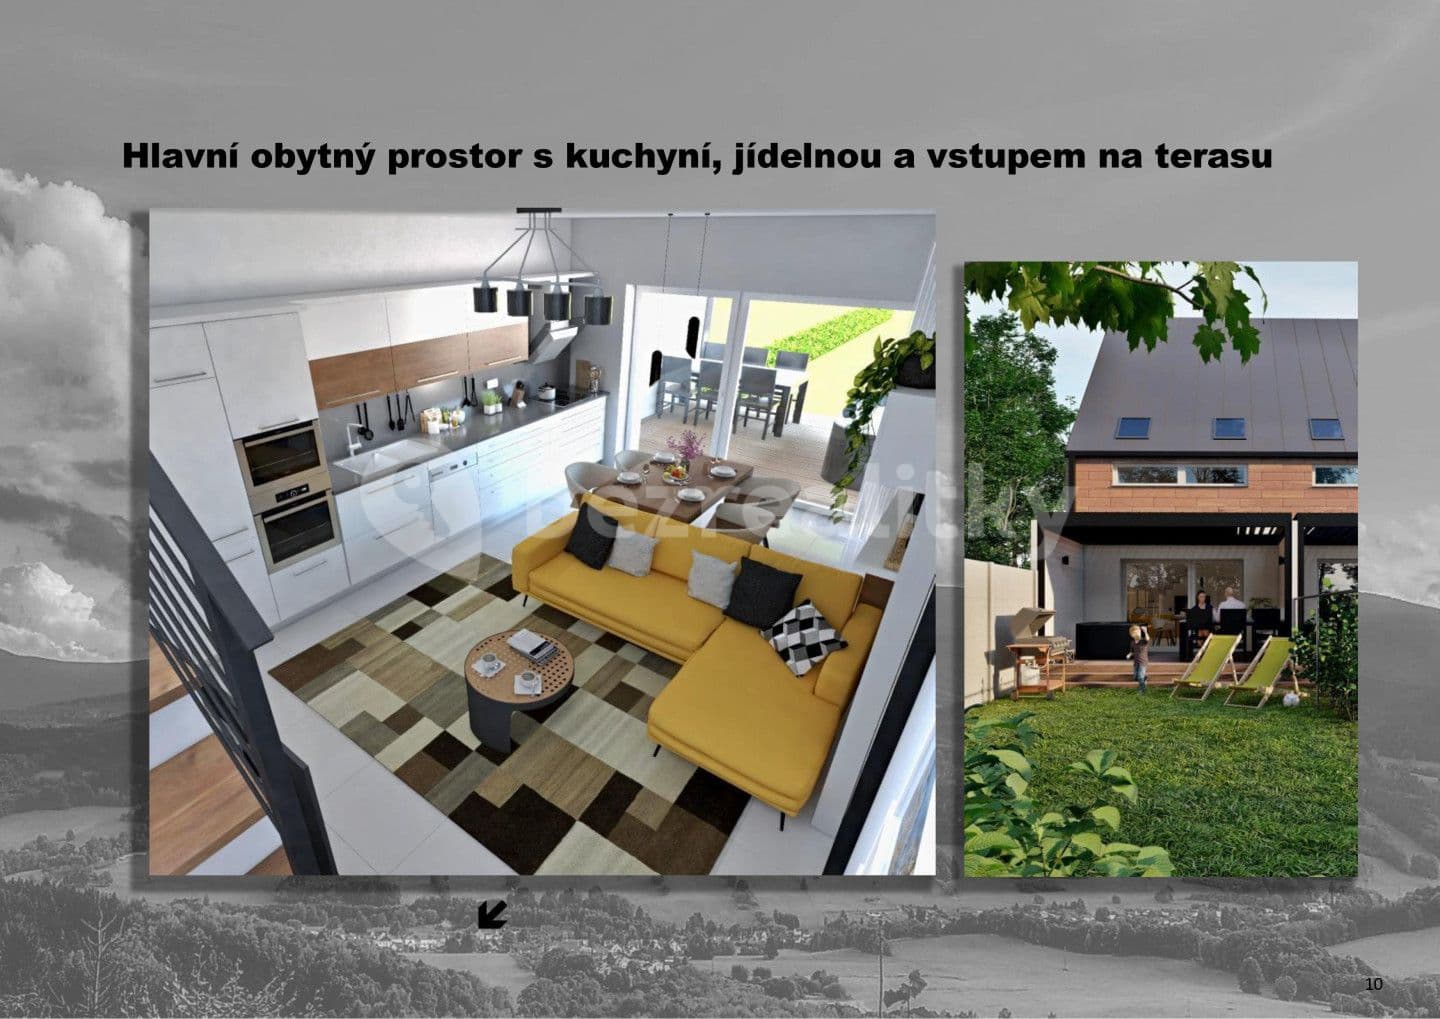 Predaj bytu 3-izbový 84 m², Lipová-lázně, Olomoucký kraj